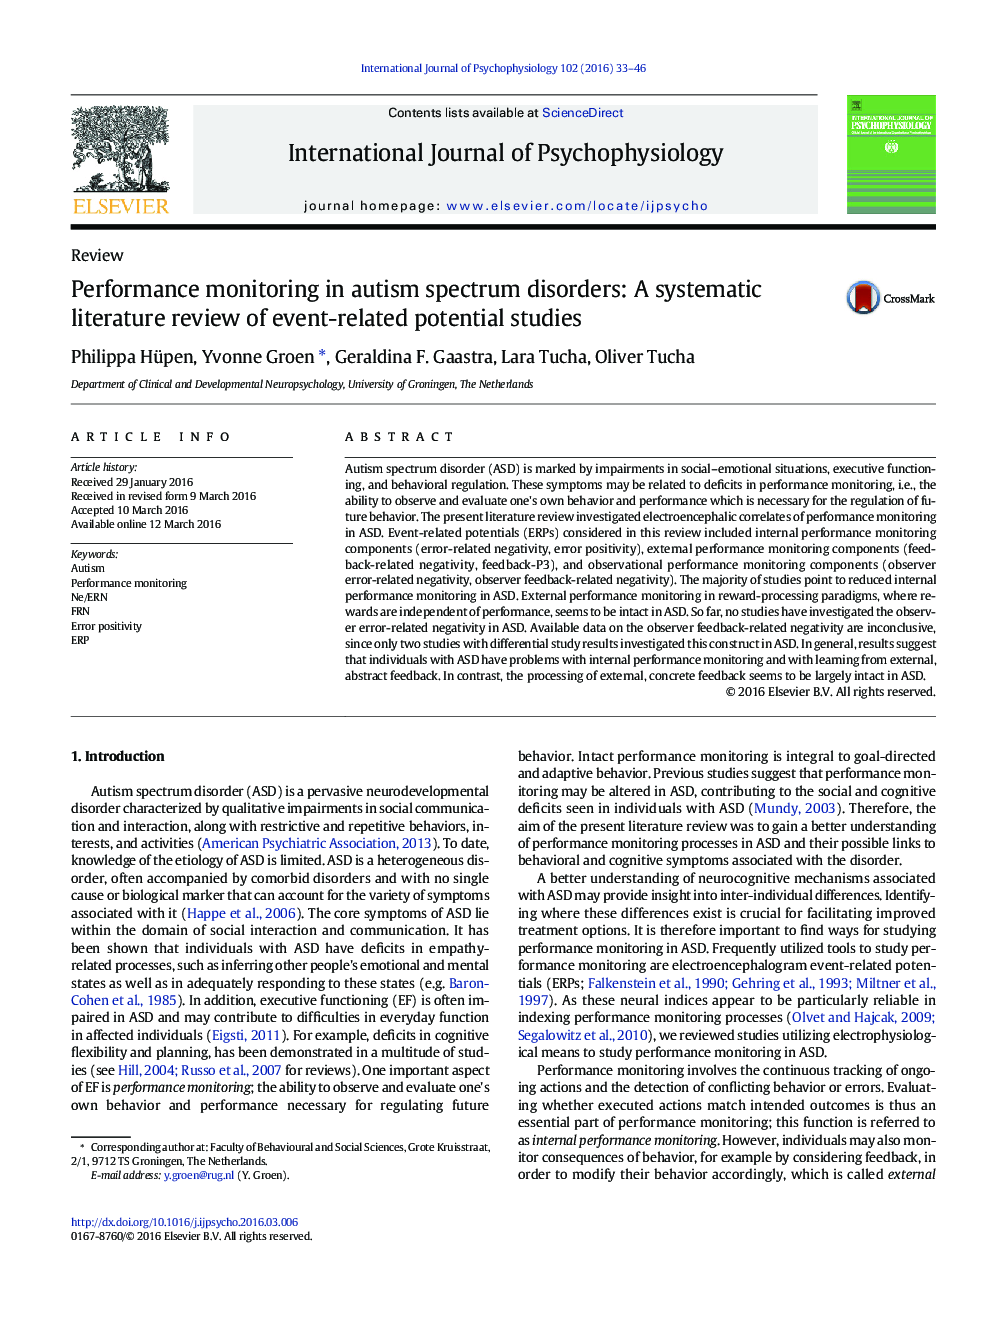 نظارت عملکرد در اختلالات طیف اوتیسم: یک بررسی ادبی سیستماتیک از مطالعات بالقوه مربوط به رویداد 